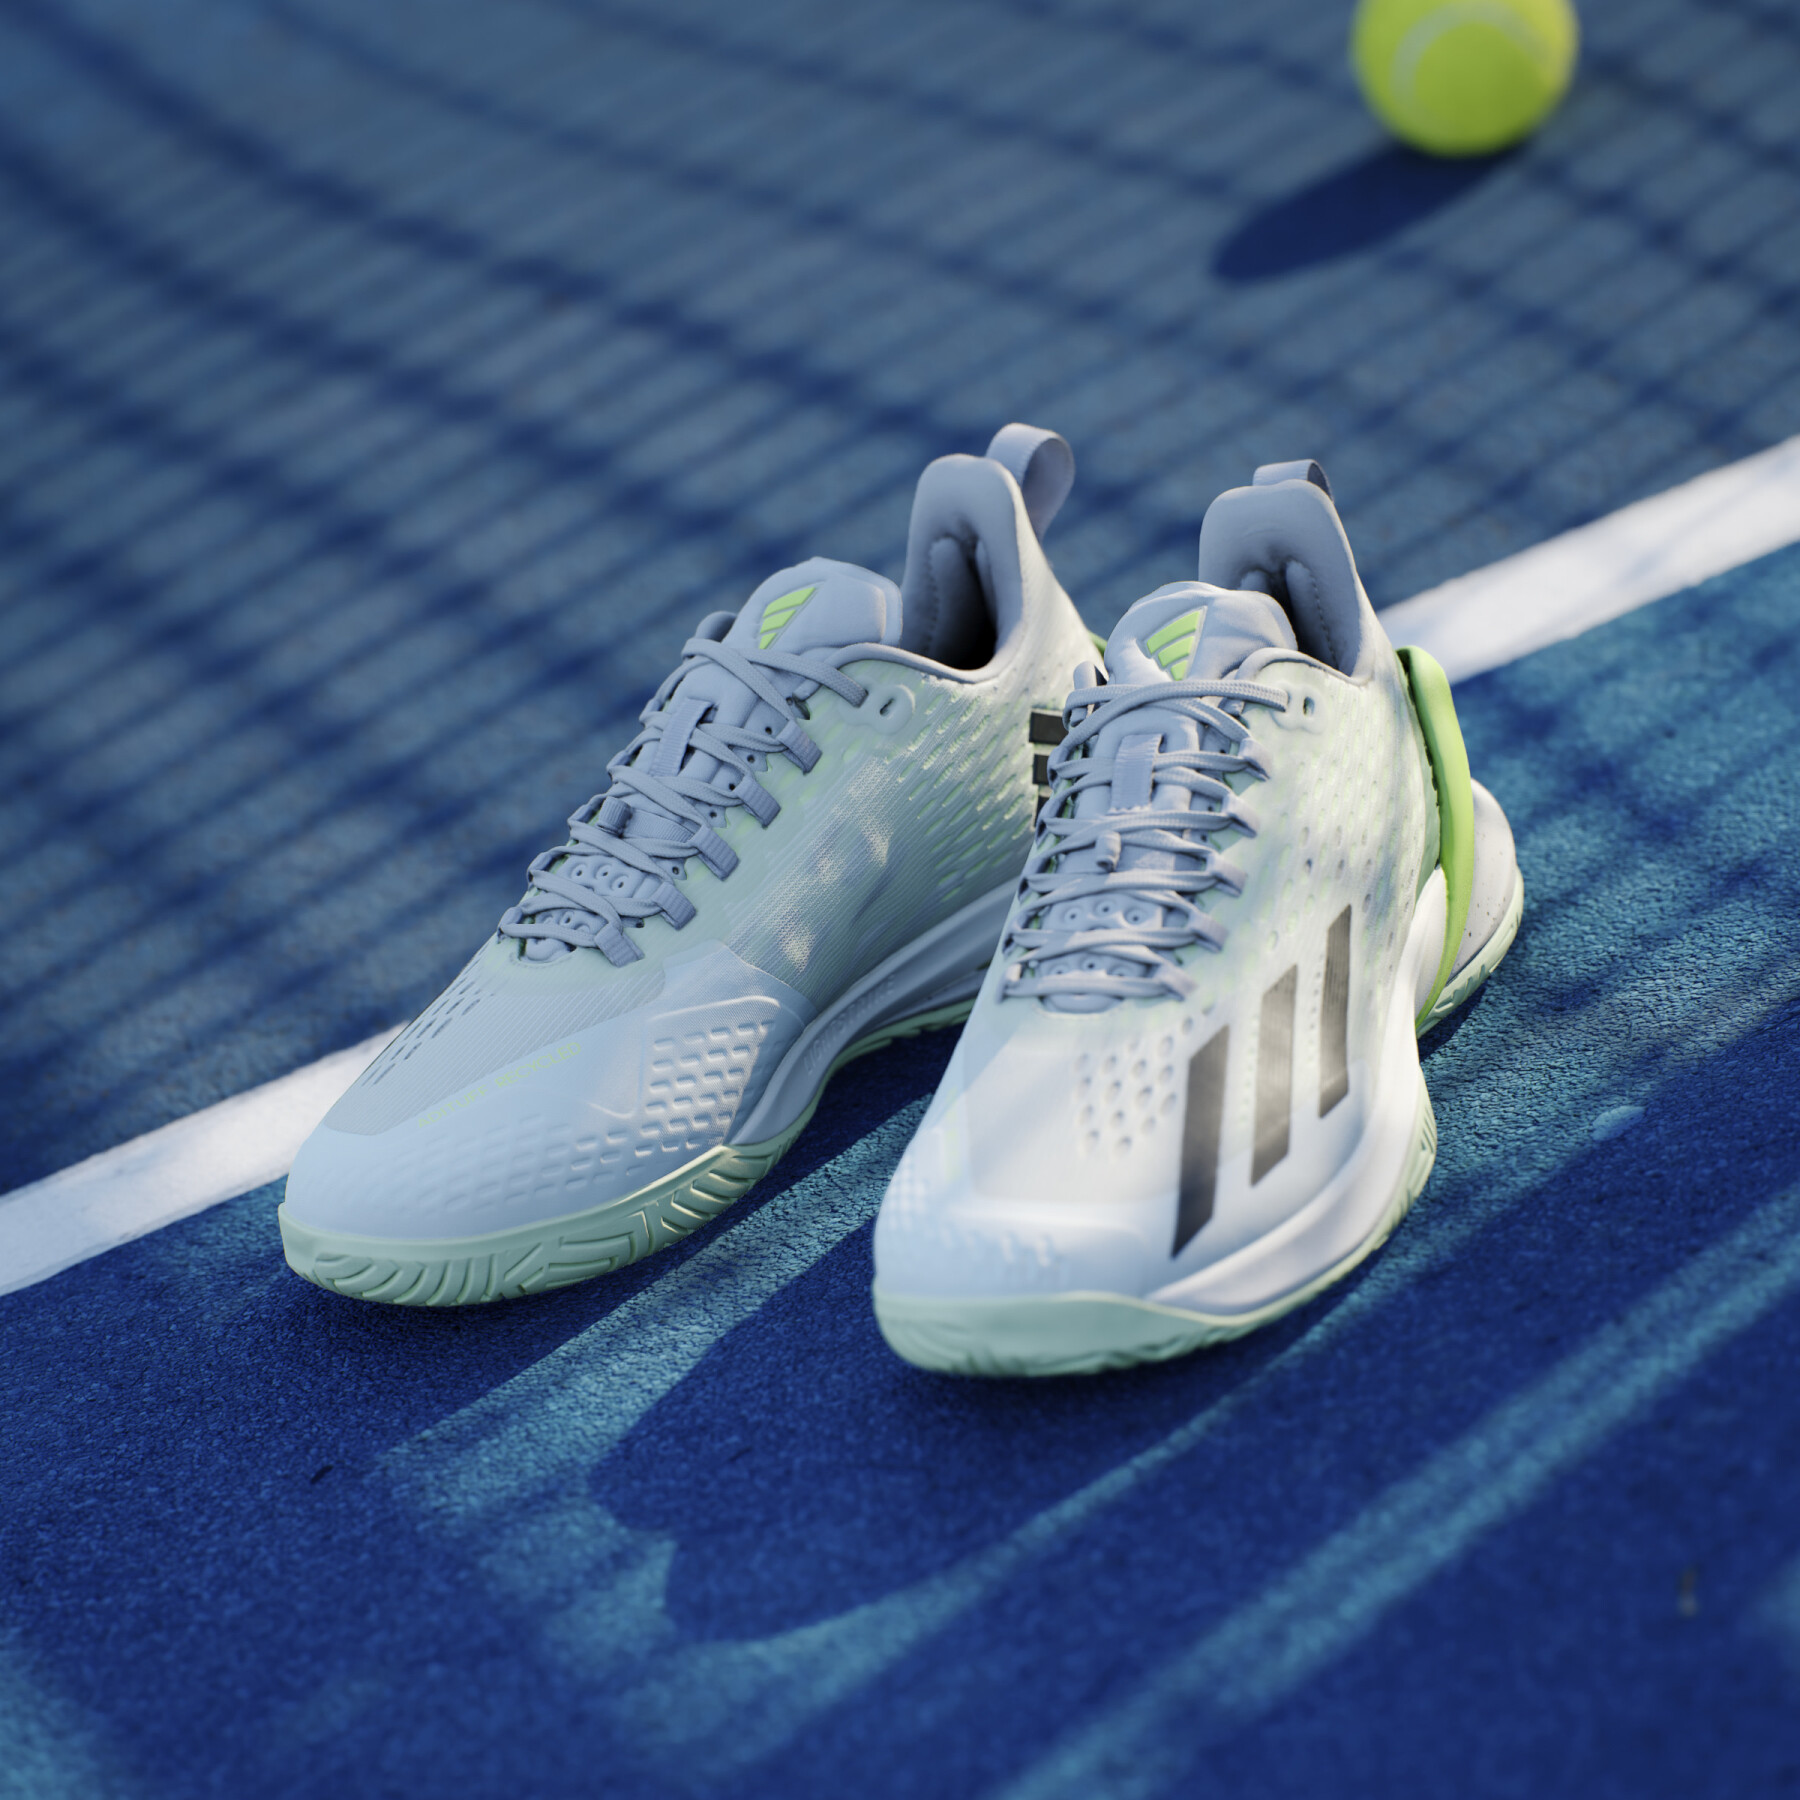 Tennis shoes adidas Adizero Cybersonic